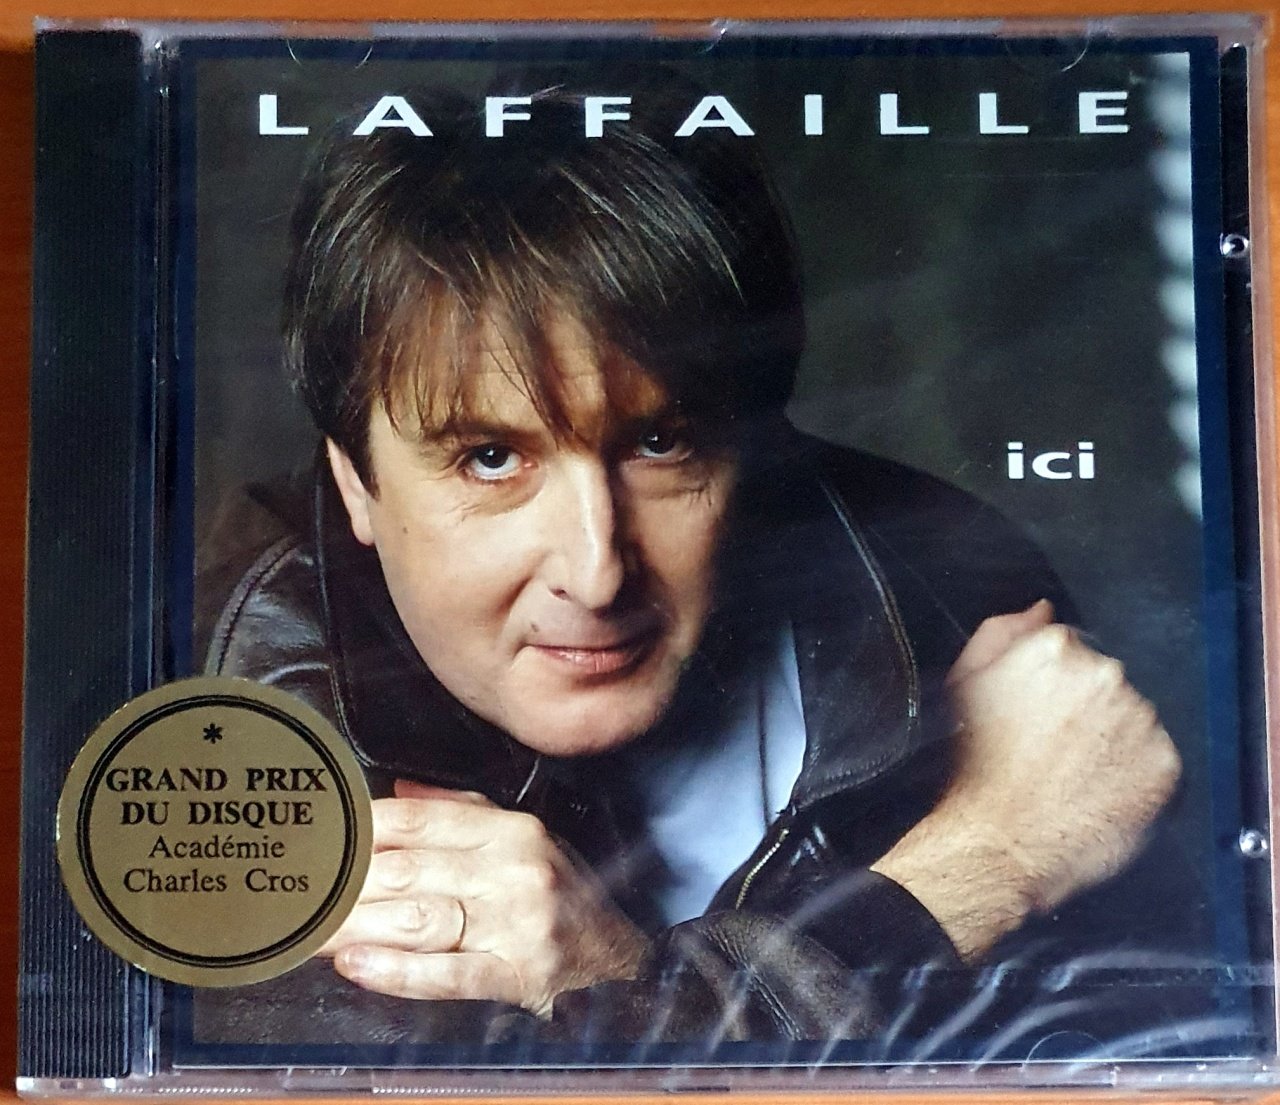 GILBERT LAFFAILLE - ICI (1994) - CD AMBALAJINDA SIFIR